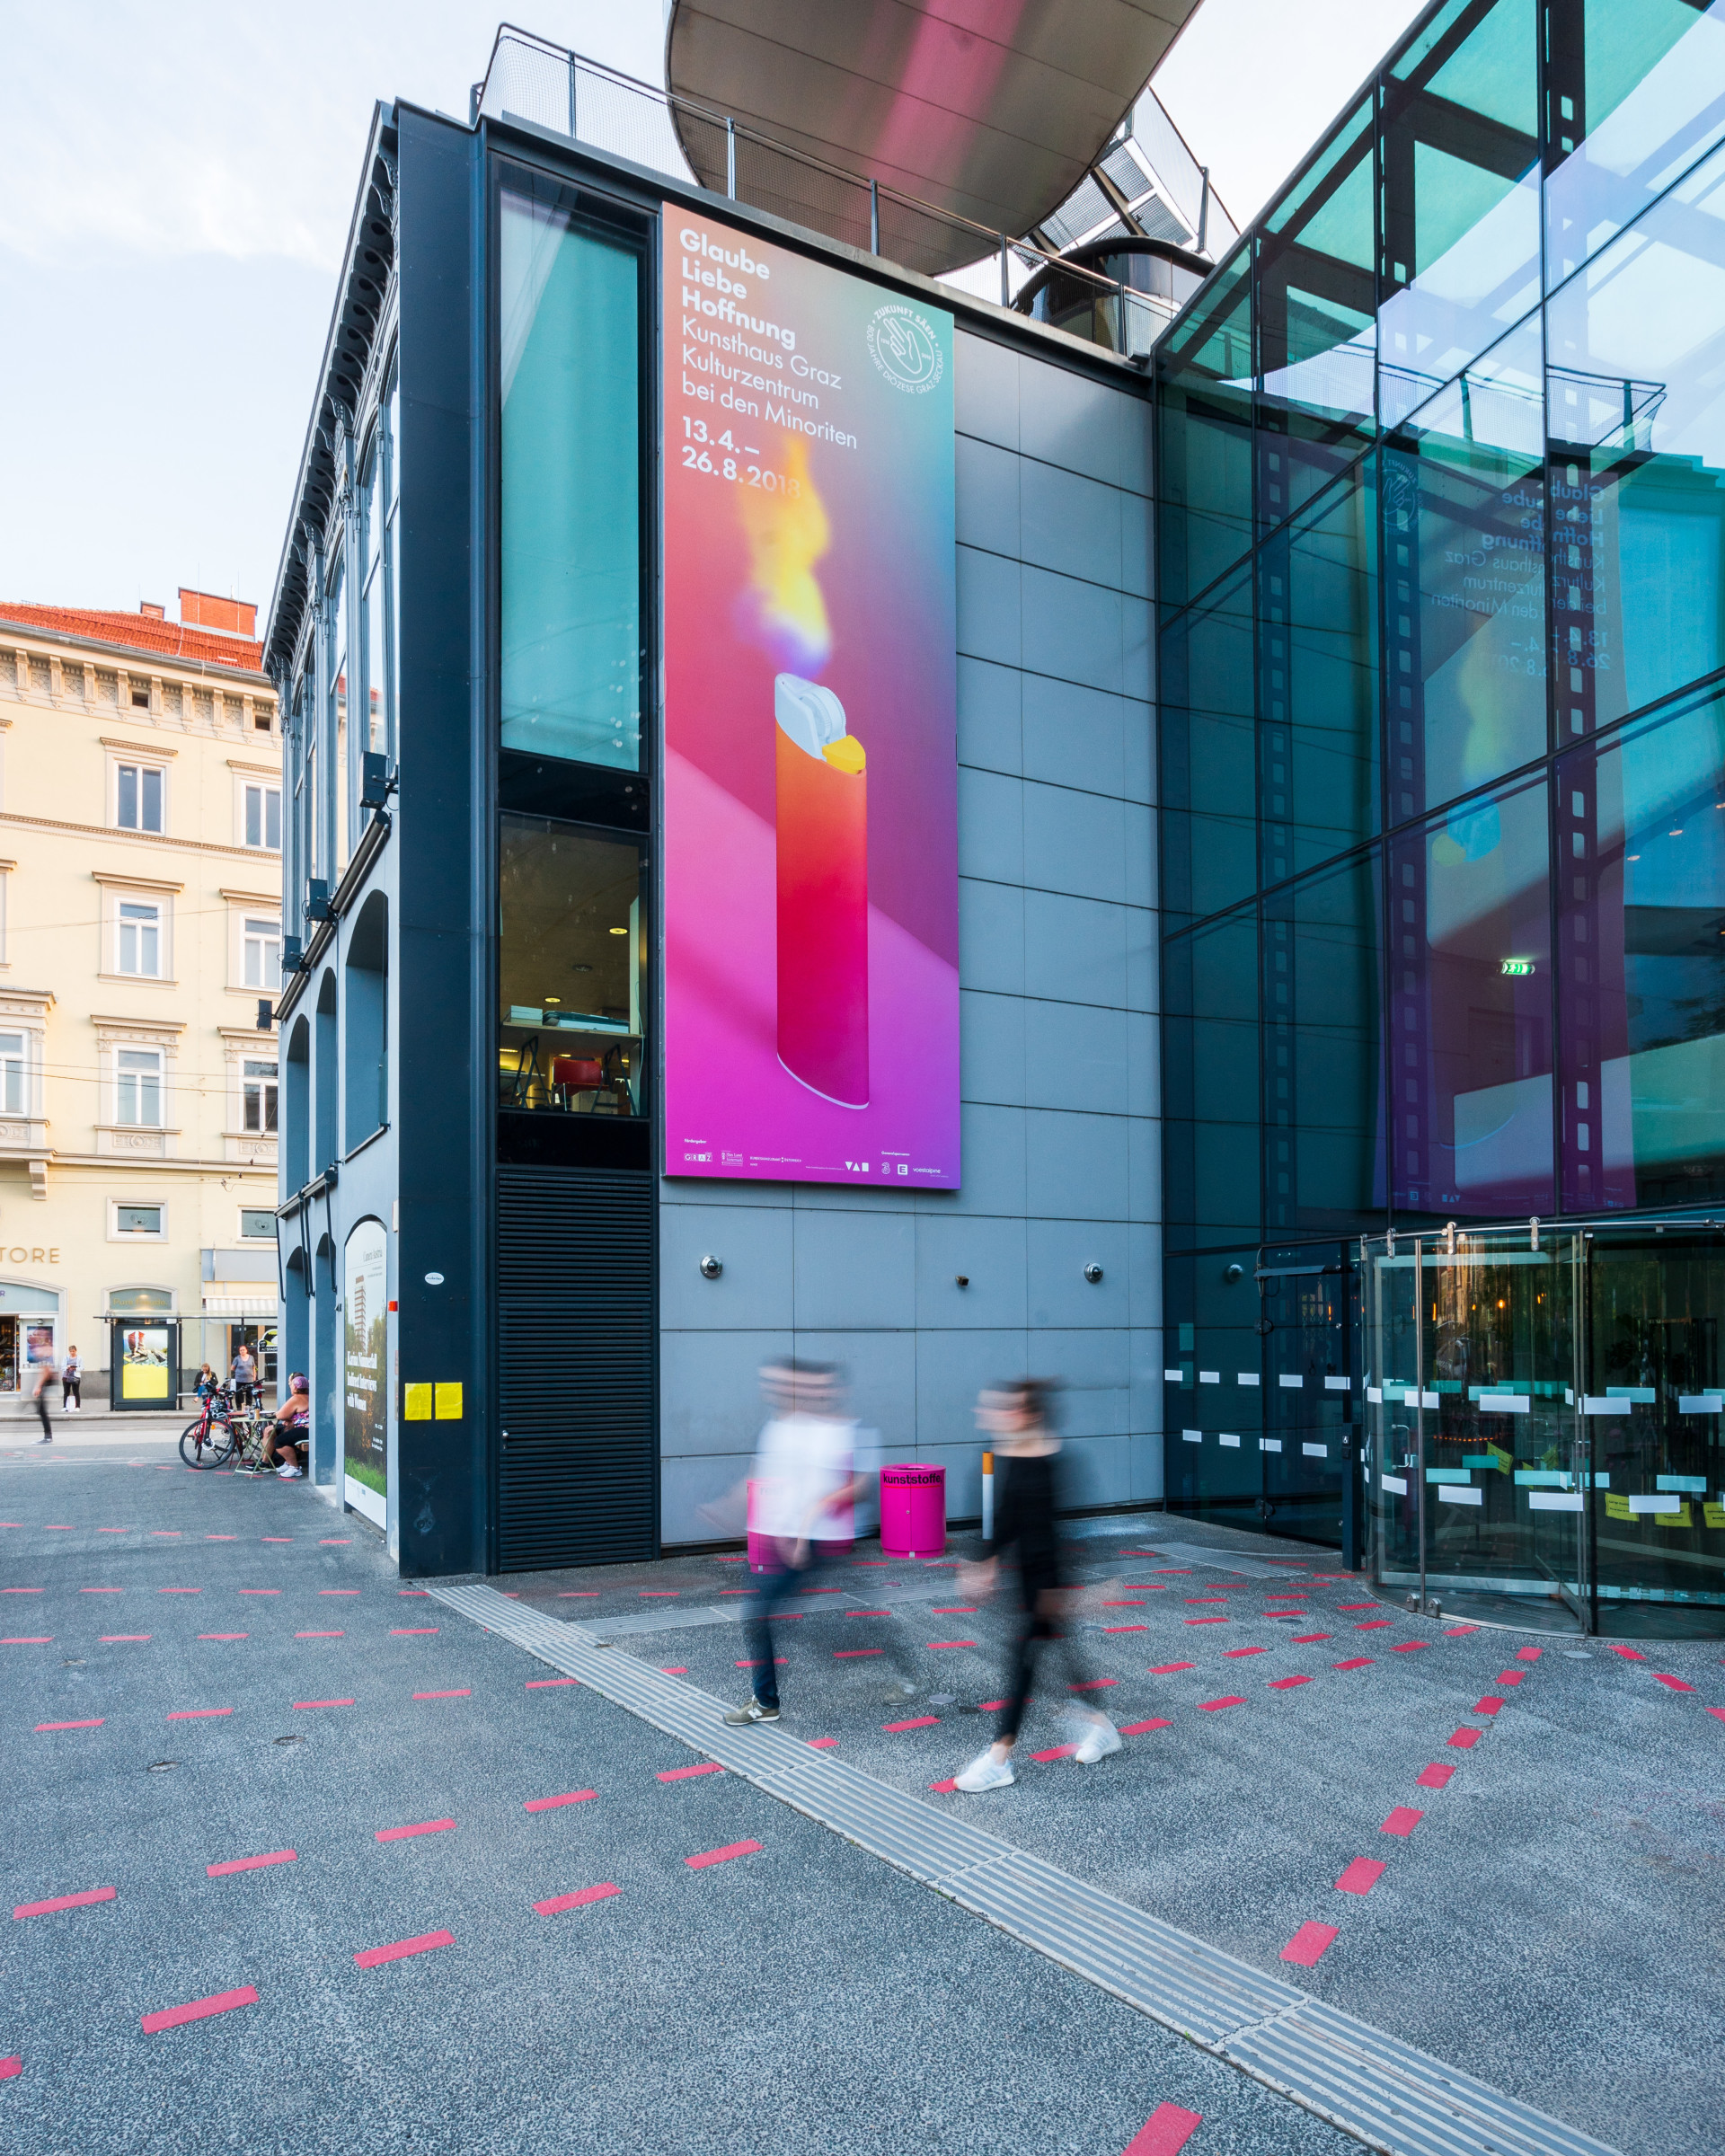 Das Kunsthaus von außen mit großem Ausstellungsplakat an der Fassade